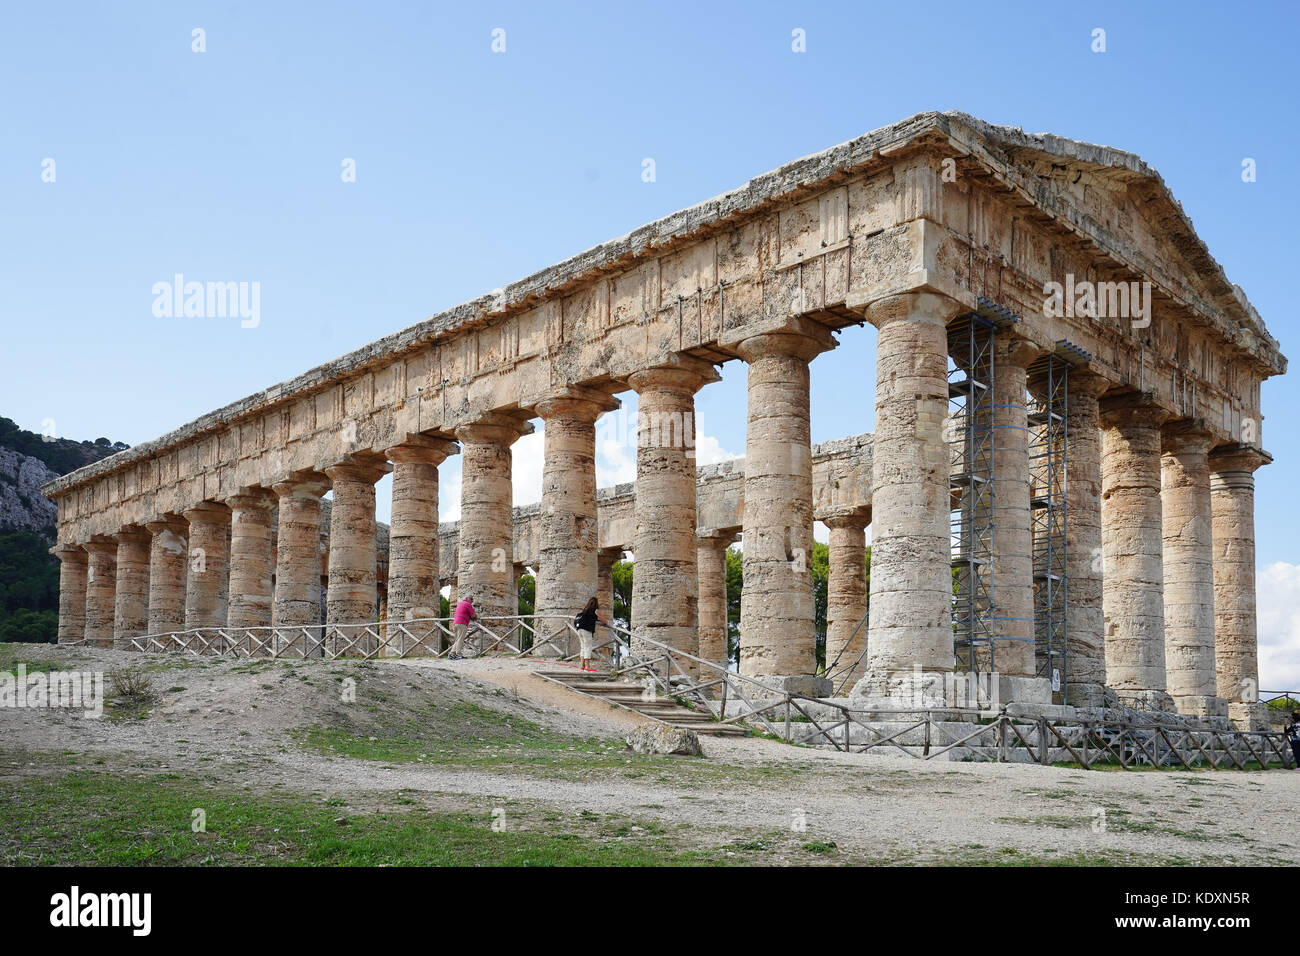 Il tempio greco al sito storico di Segesta. da una serie di foto di viaggio in Sicilia, Italia. photo Data: sabato, 30 settembre 2017. foto c Foto Stock